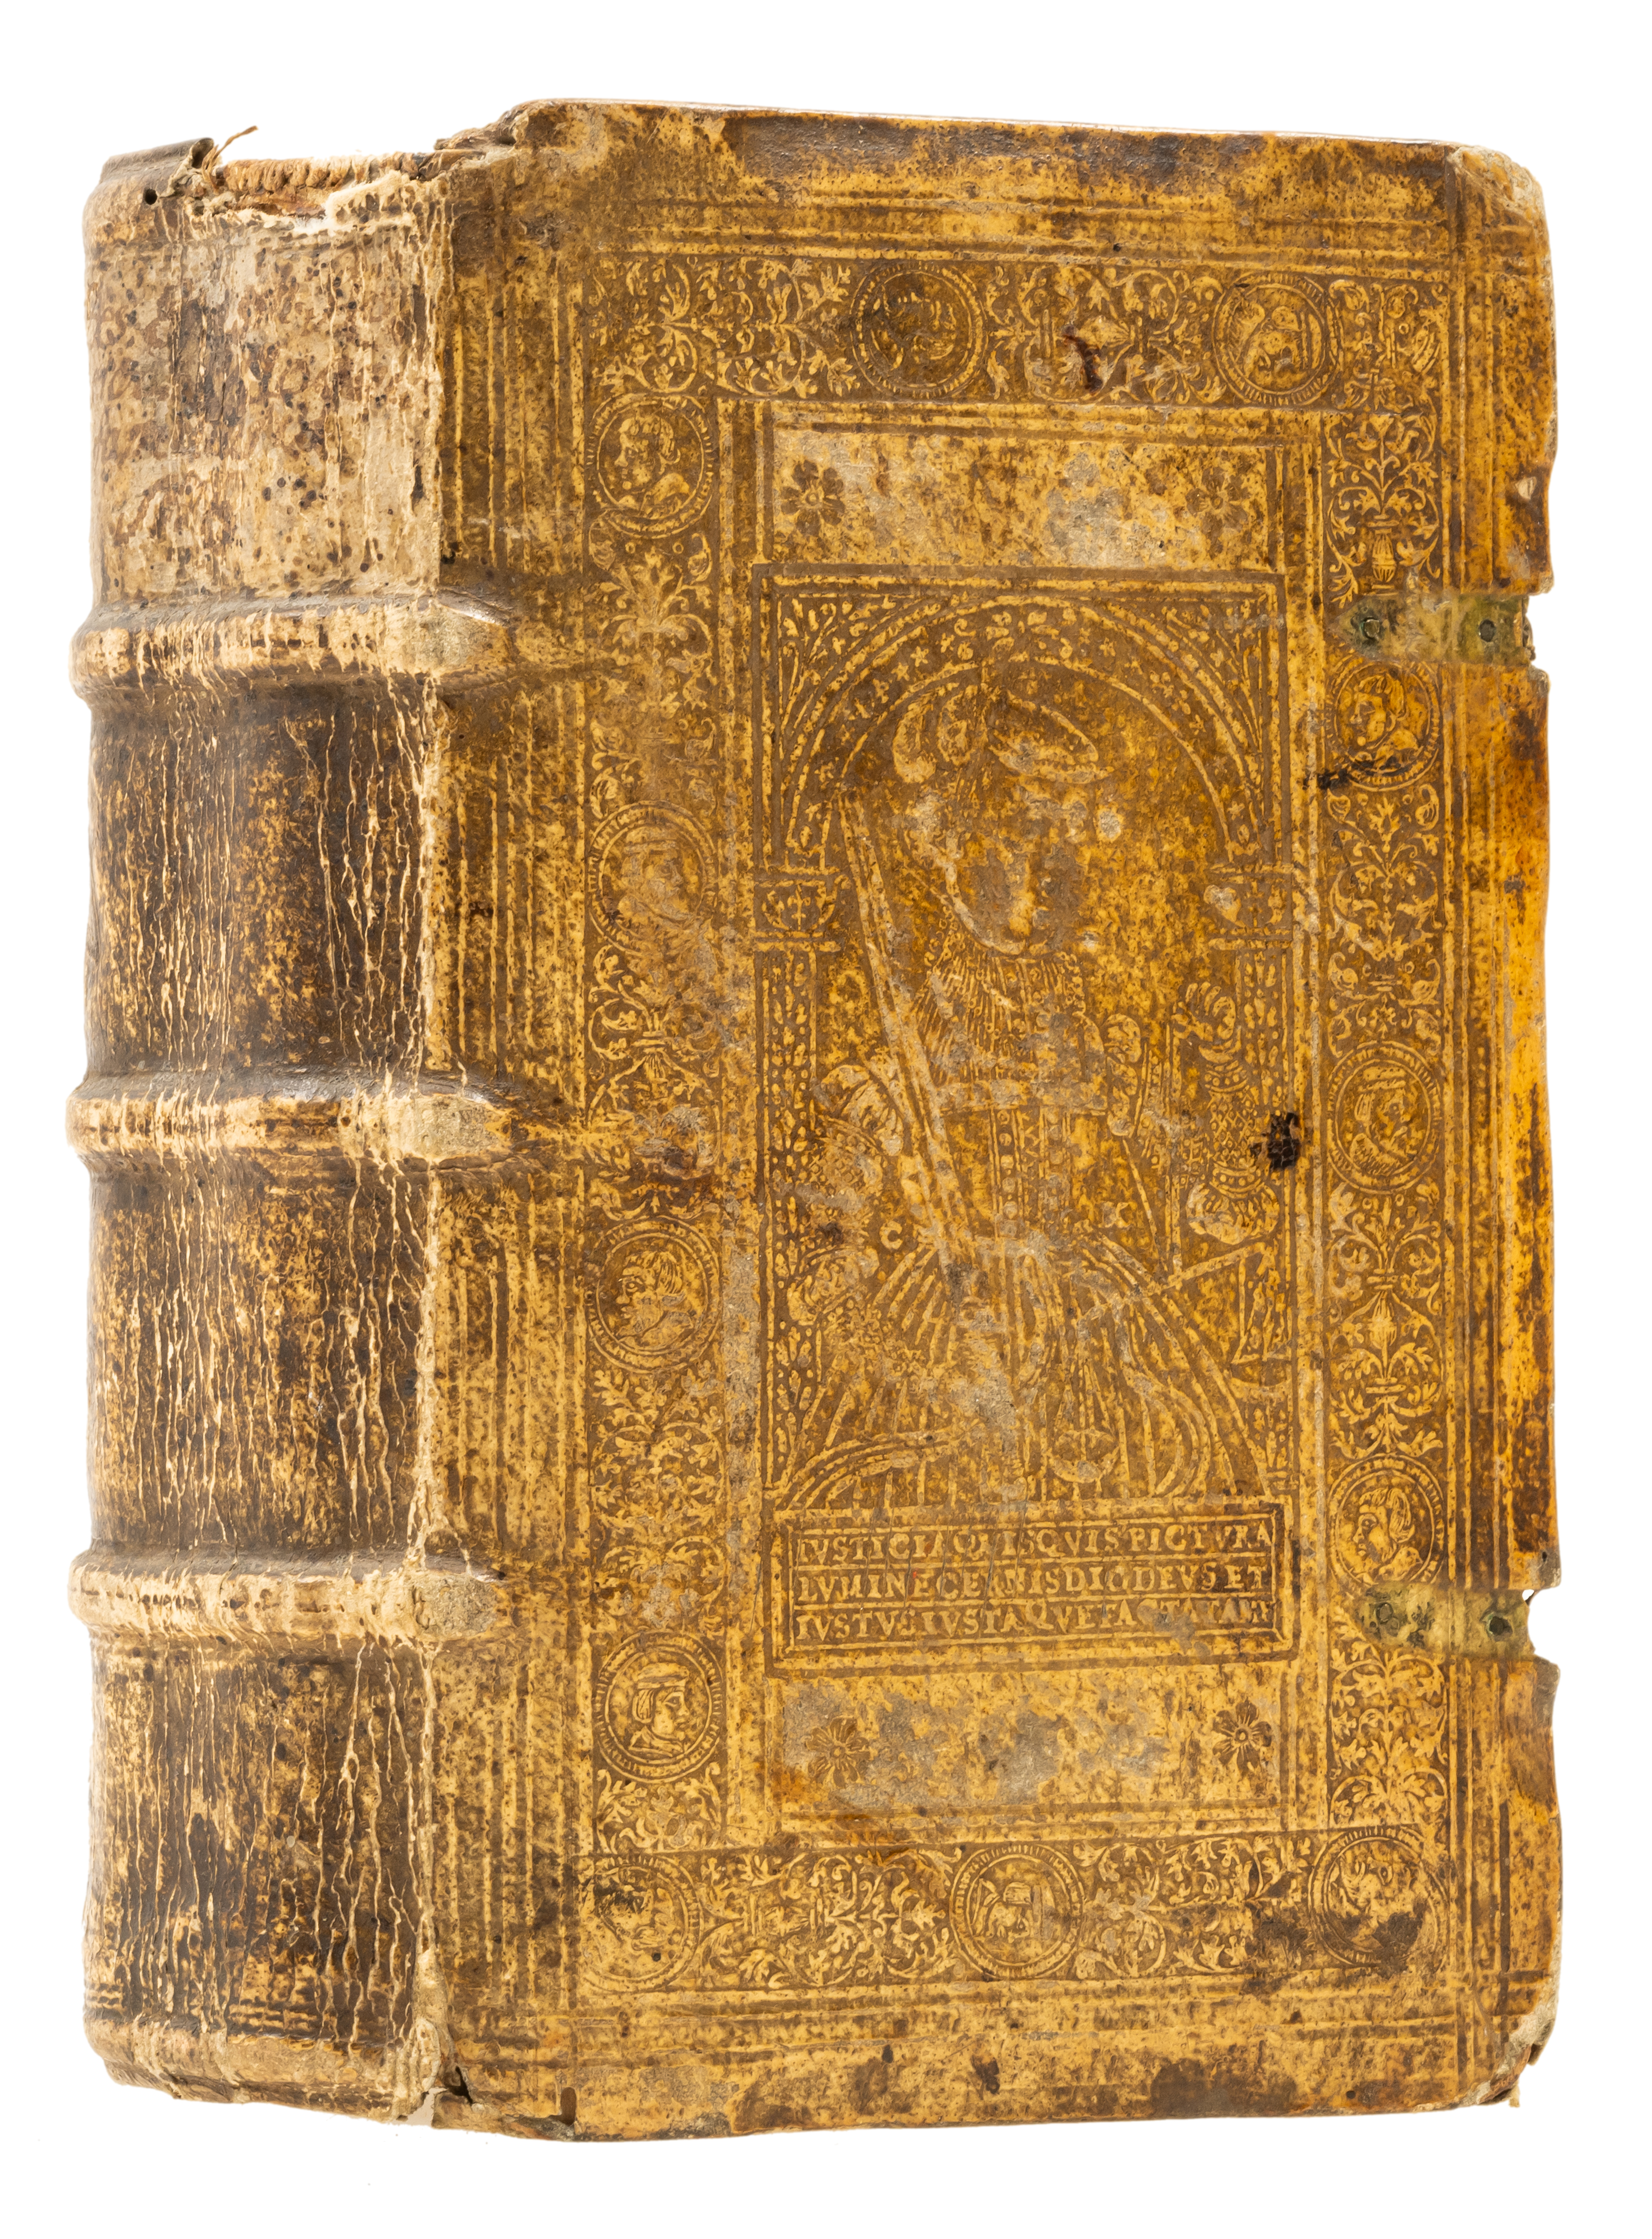 Erasmus (Desiderius) Colloquiorum familiarium opus, Frankfurt, Heirs of Christian Egenolff, 1562.